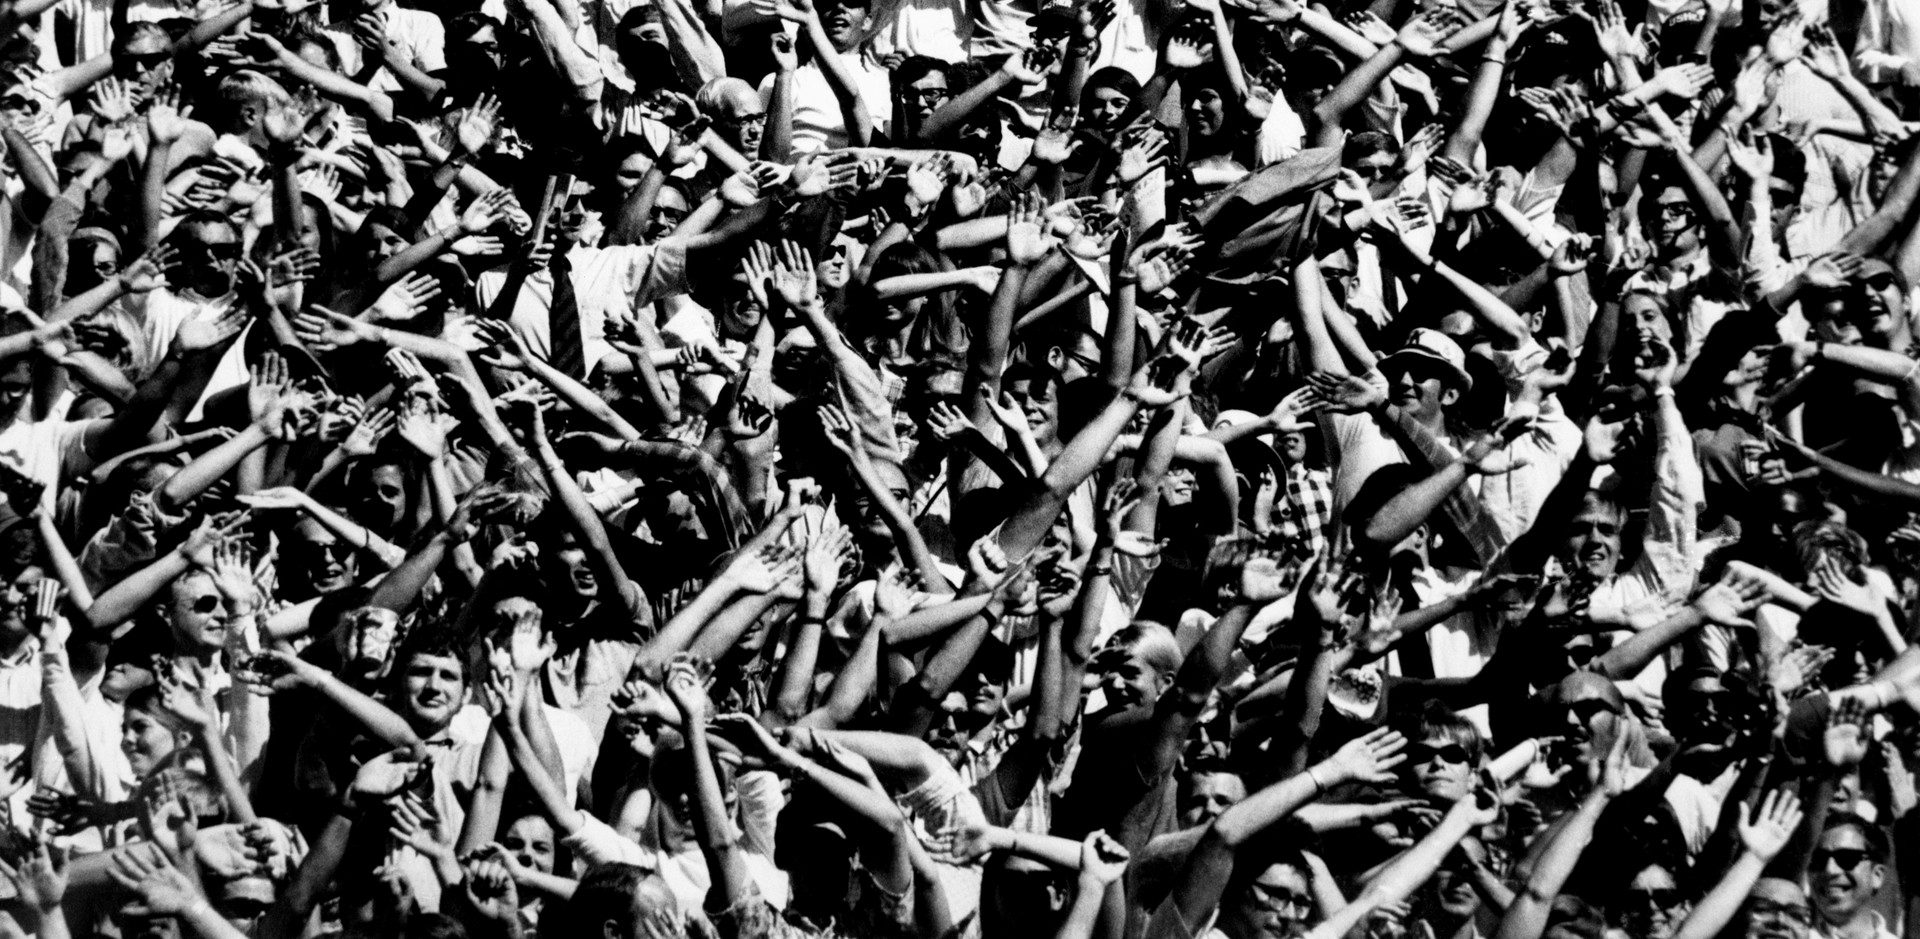 Толпа срущих. Толпойидовели до оргпщма. Черно-белое фото звезда Давида из толпы людей.